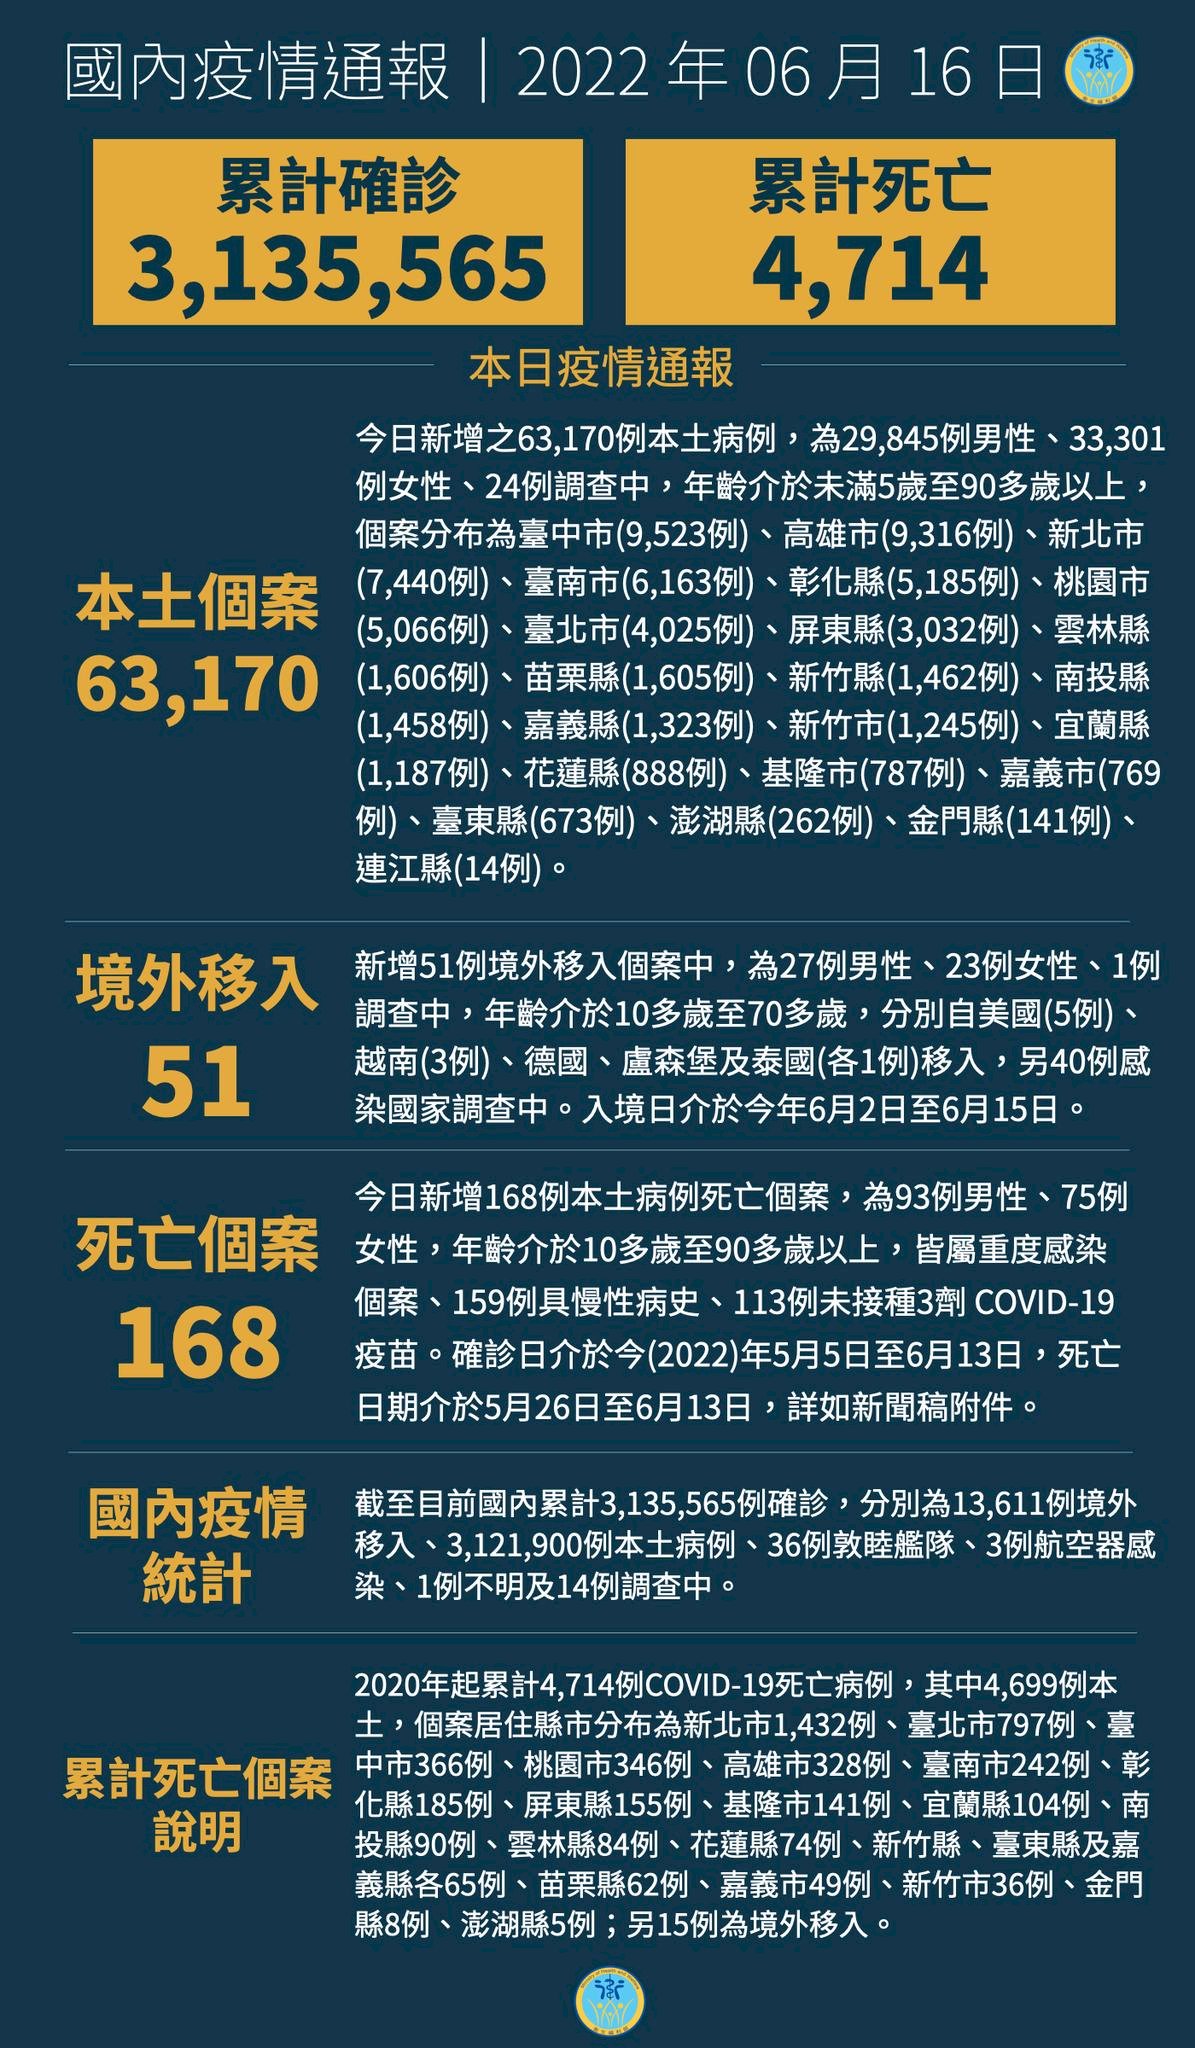 16/6, Đài Loan ghi nhận thêm 63170 ca nhiễm COVID-19 trong nước, thêm 168 trường hợp tử vong, 373 ca nhiễm có triệu chứng trung bình và nặng